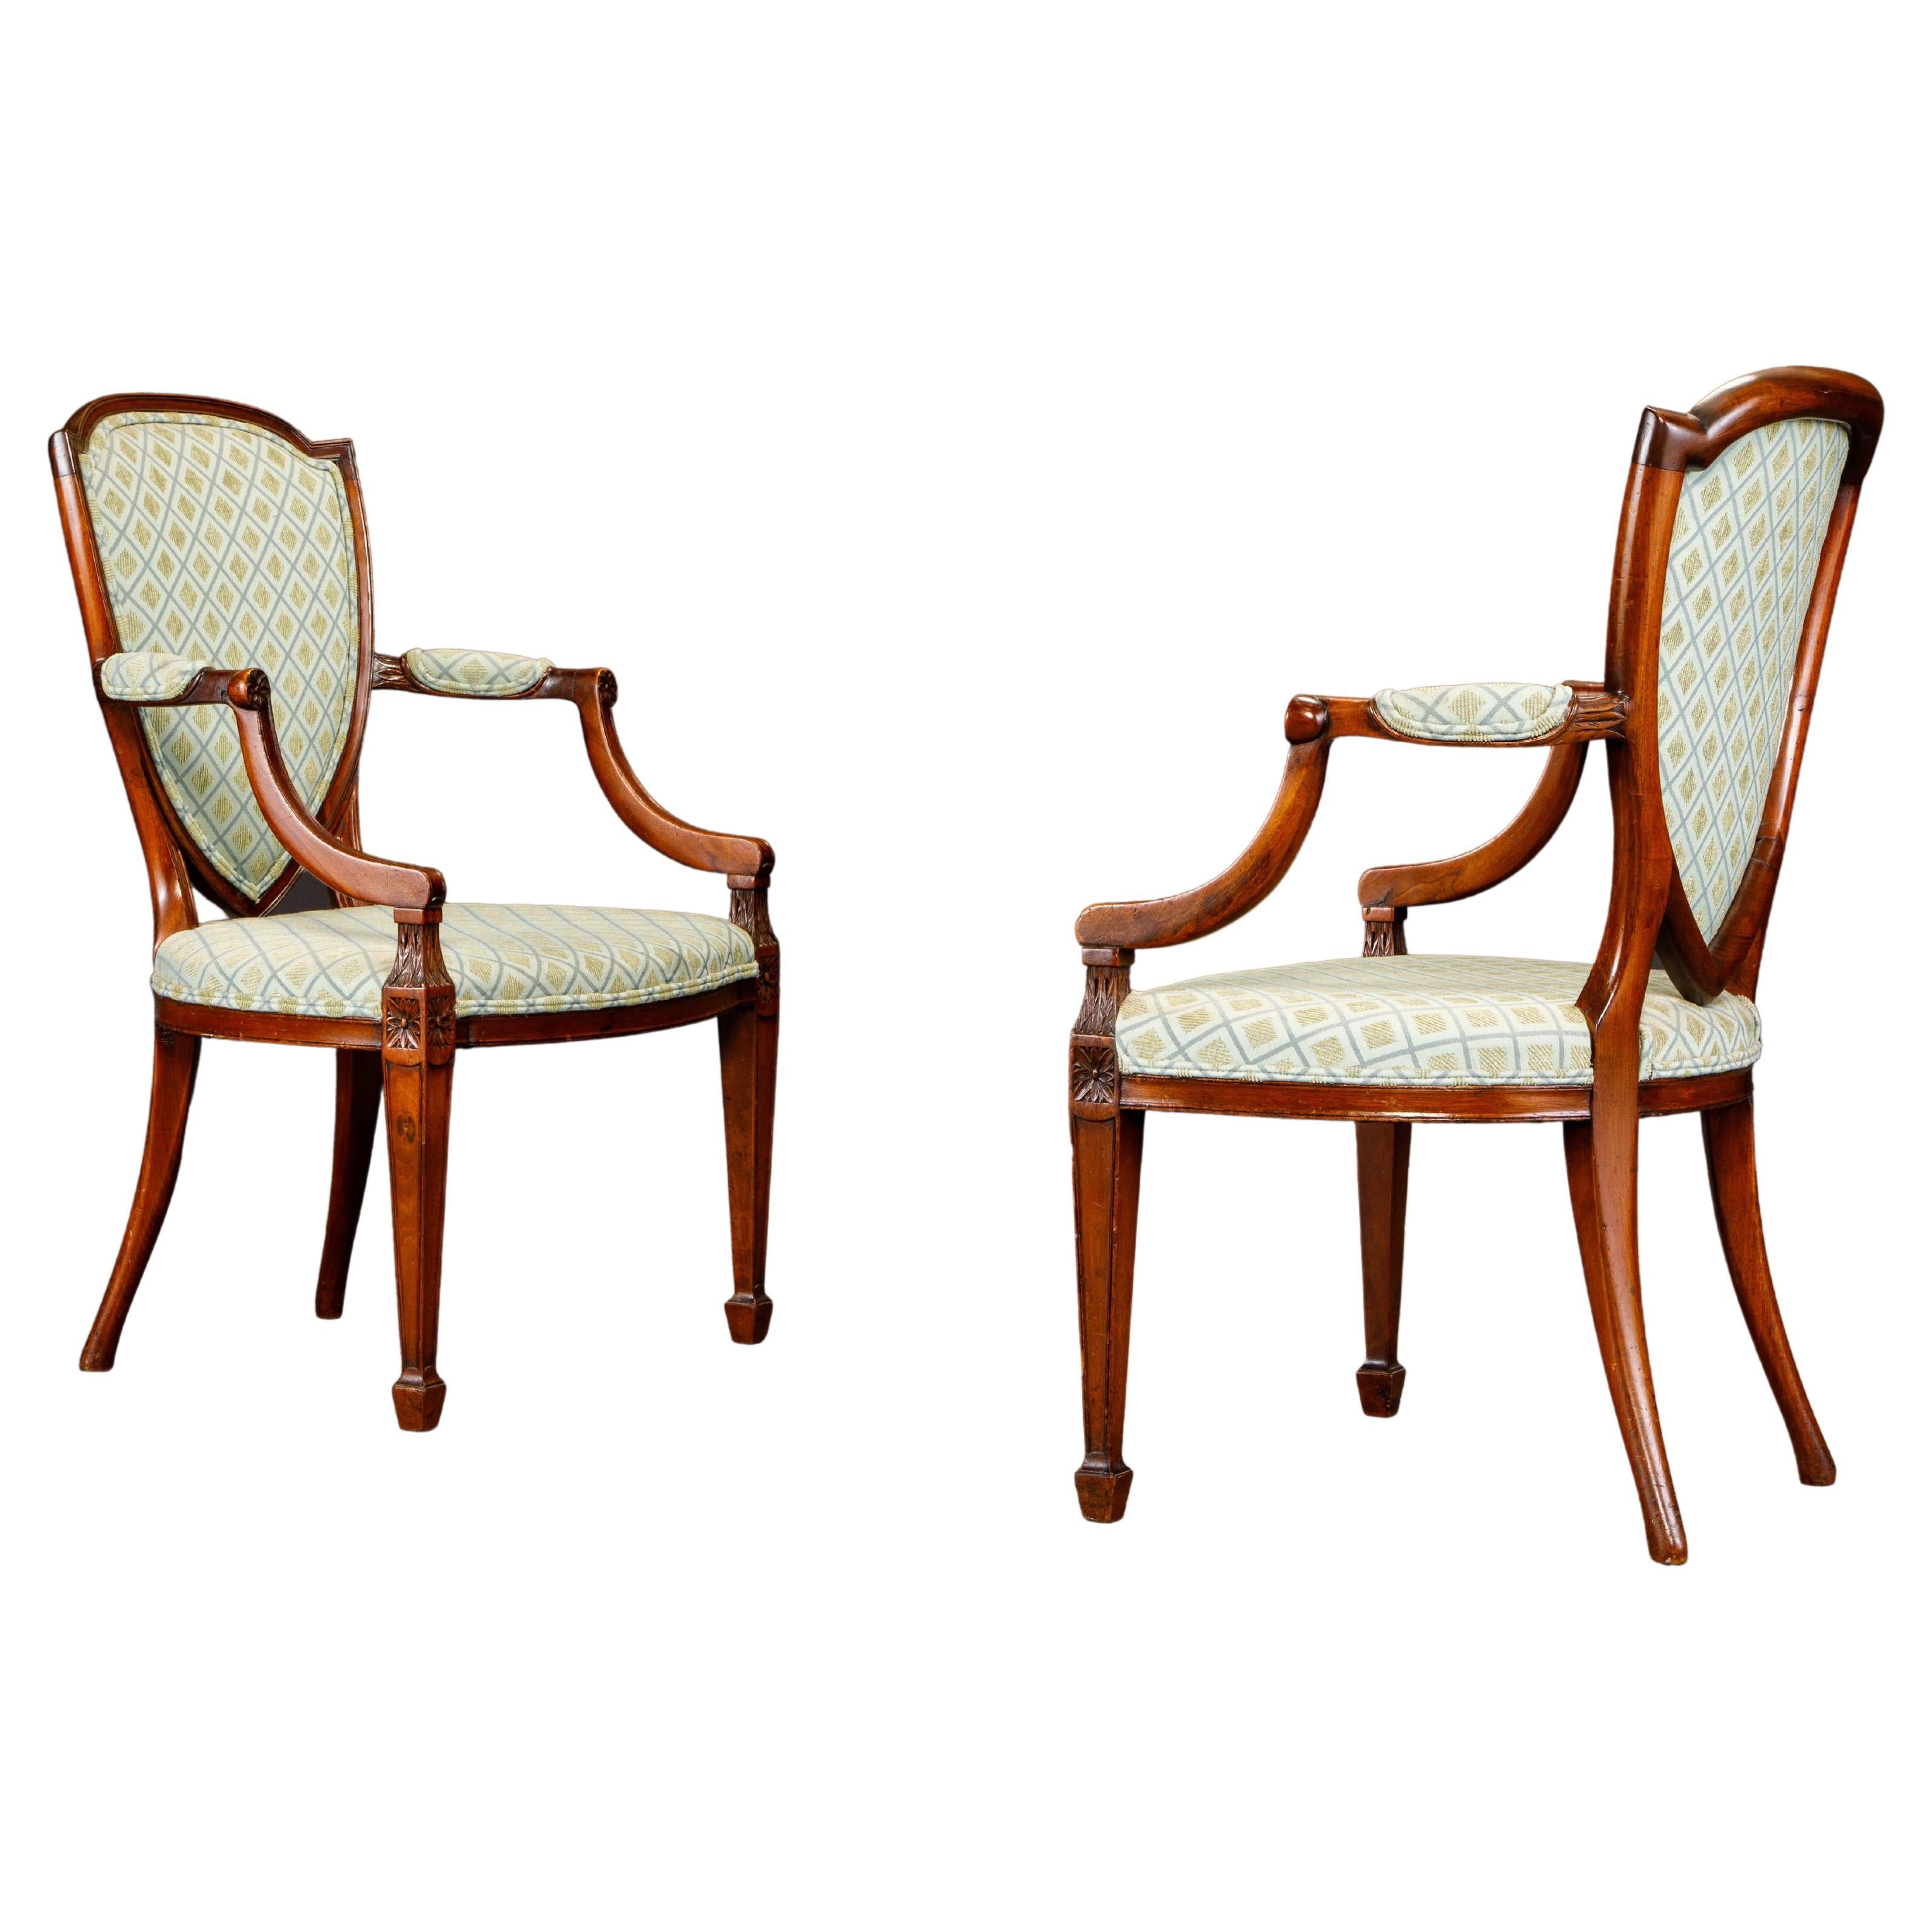 Paire de fauteuils Hepplewhite tapissés à dossier en forme de bouclier, provenance des années 1870